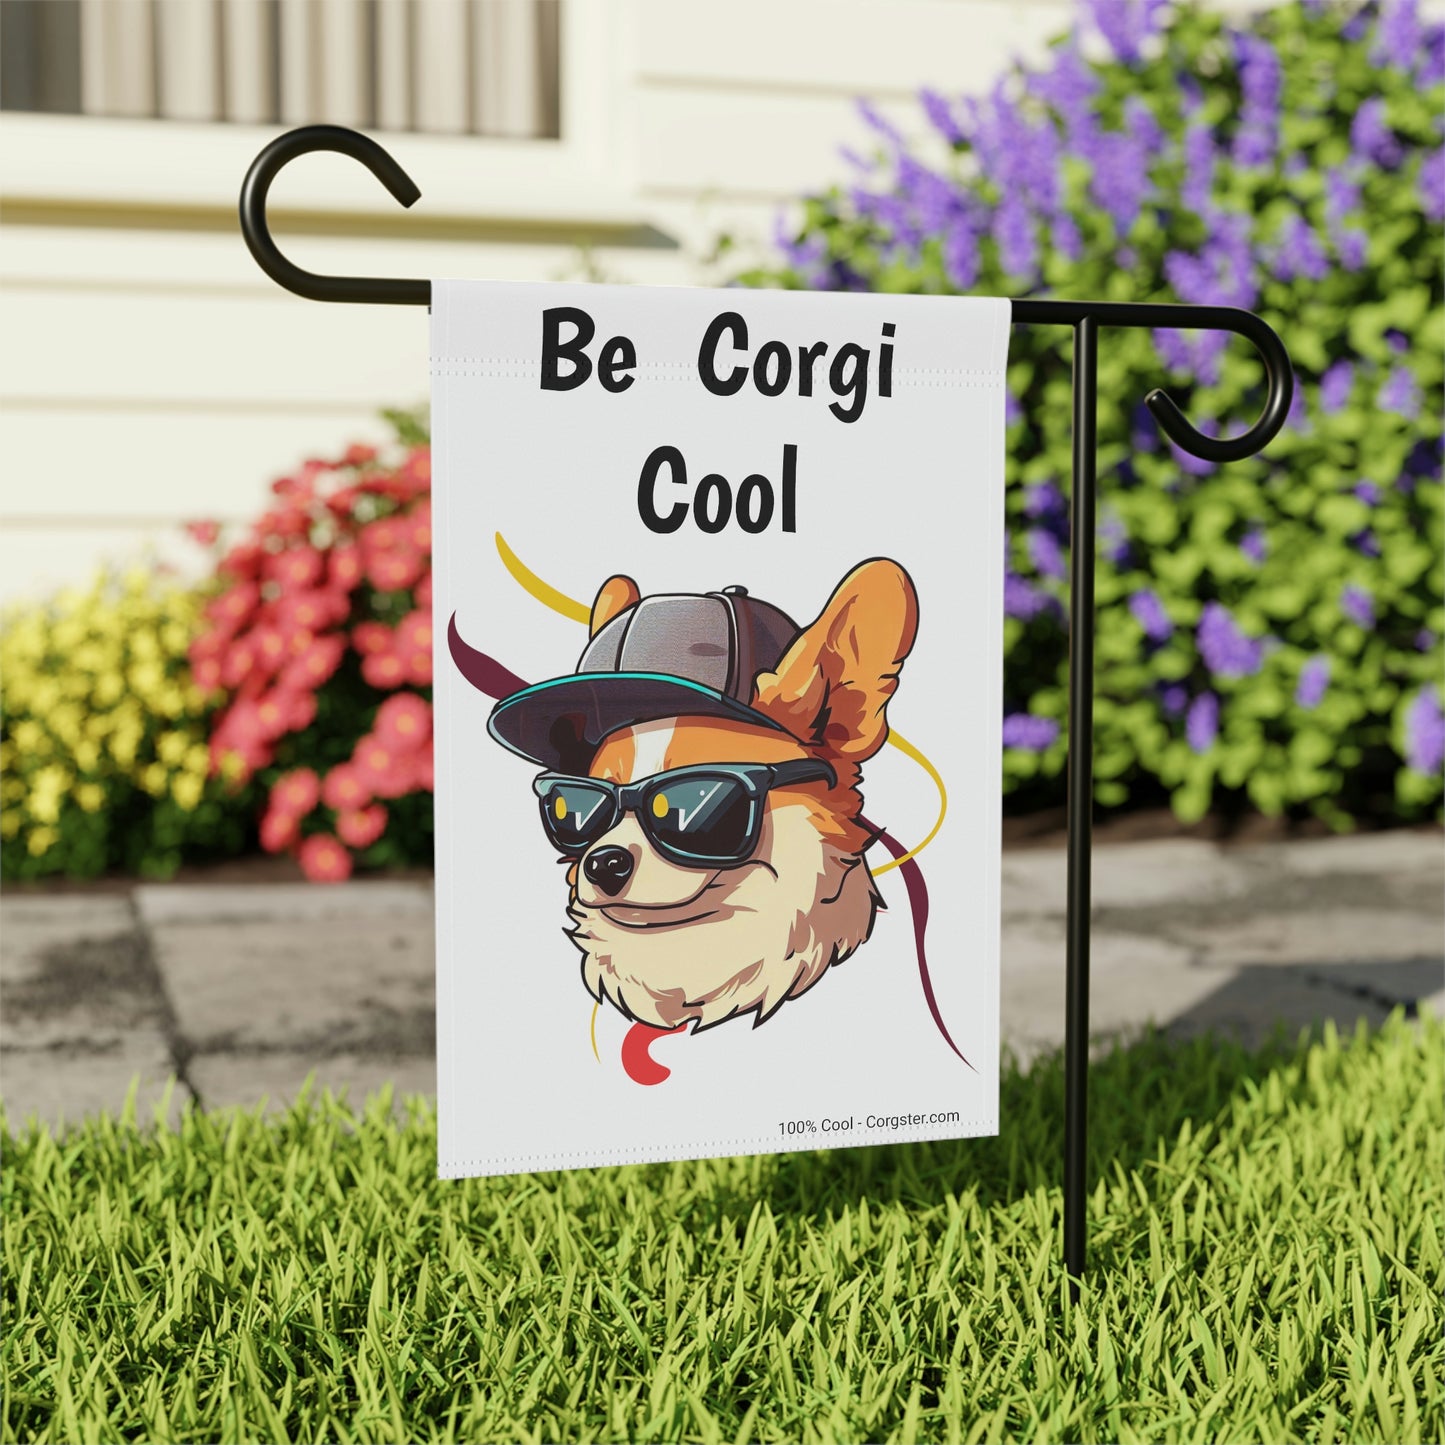 Be Corgi Cool - Corgster Garden & House Banner